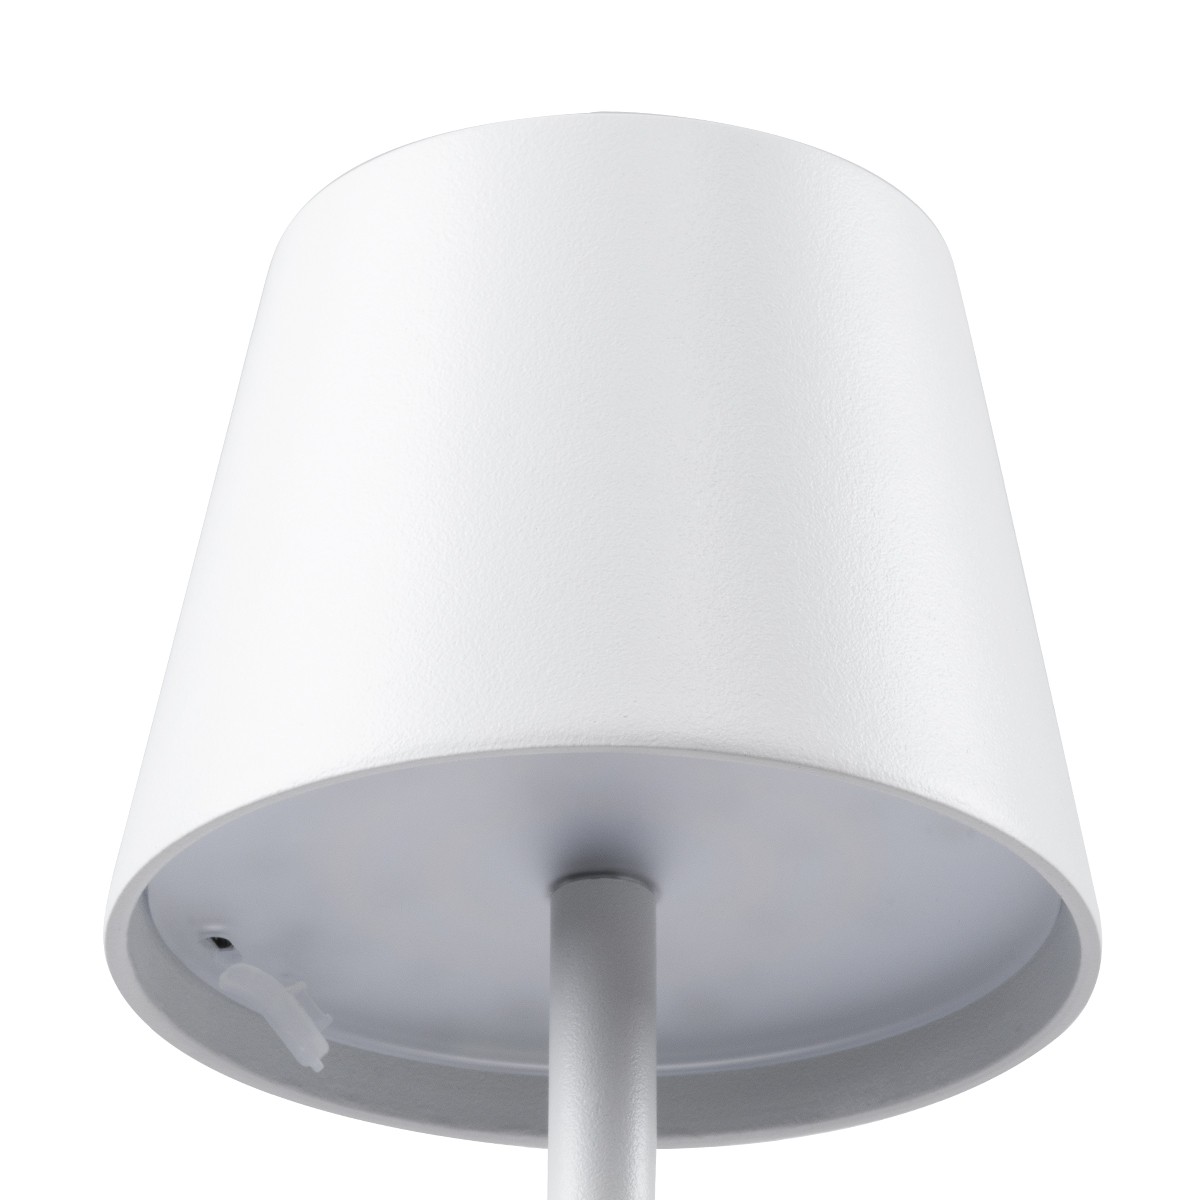 LED Επιδαπέδιο Φωτιστικό Λευκό 2.2W FIDEL Επαναφορτιζόμενο με Μπαταρία και Διακόπτη Αφής Dimmable - Φ12 x 160cm